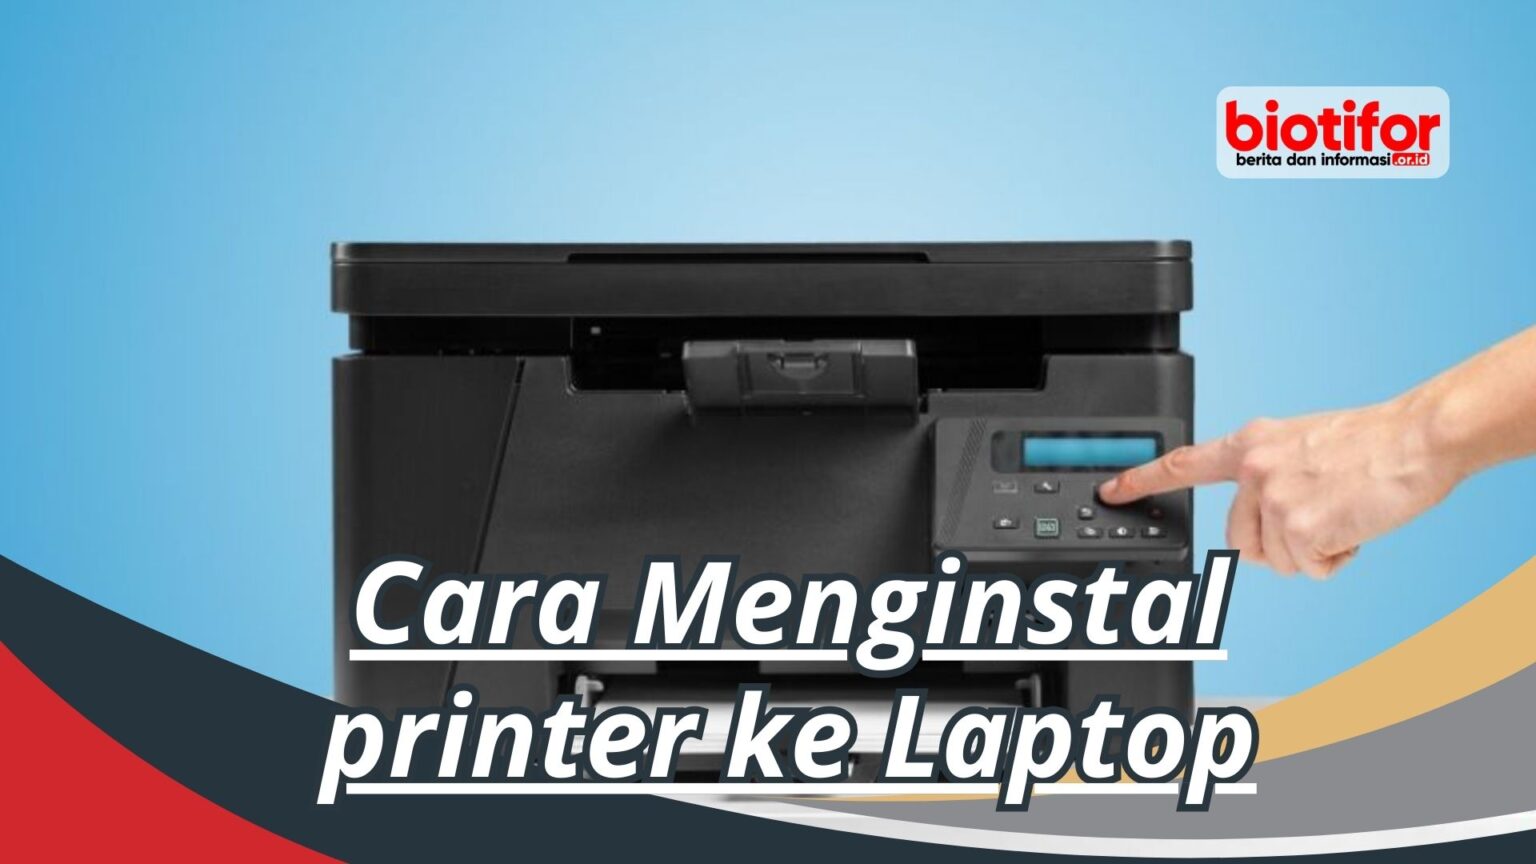 Cara Menginstal Printer Ke Laptop Biotifor 6384